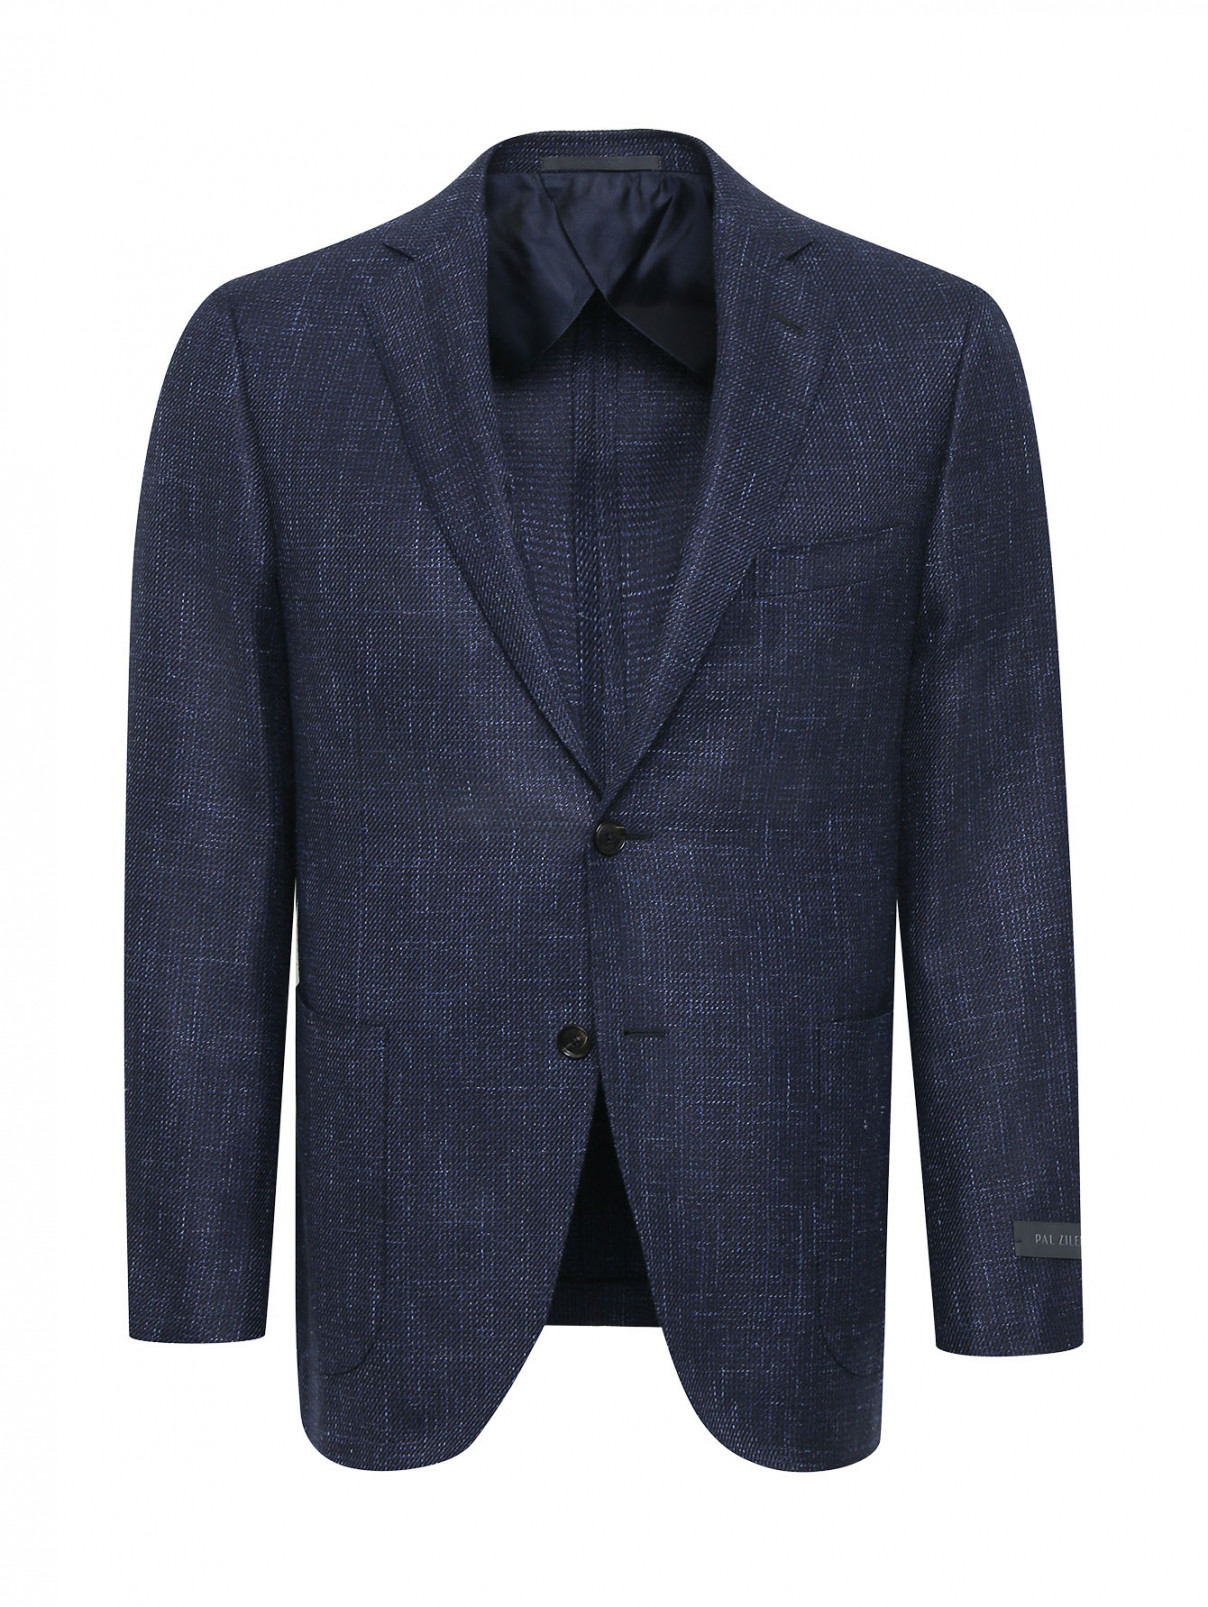 Пиджак из шерсти и шелка Pal Zileri  –  Общий вид  – Цвет:  Синий